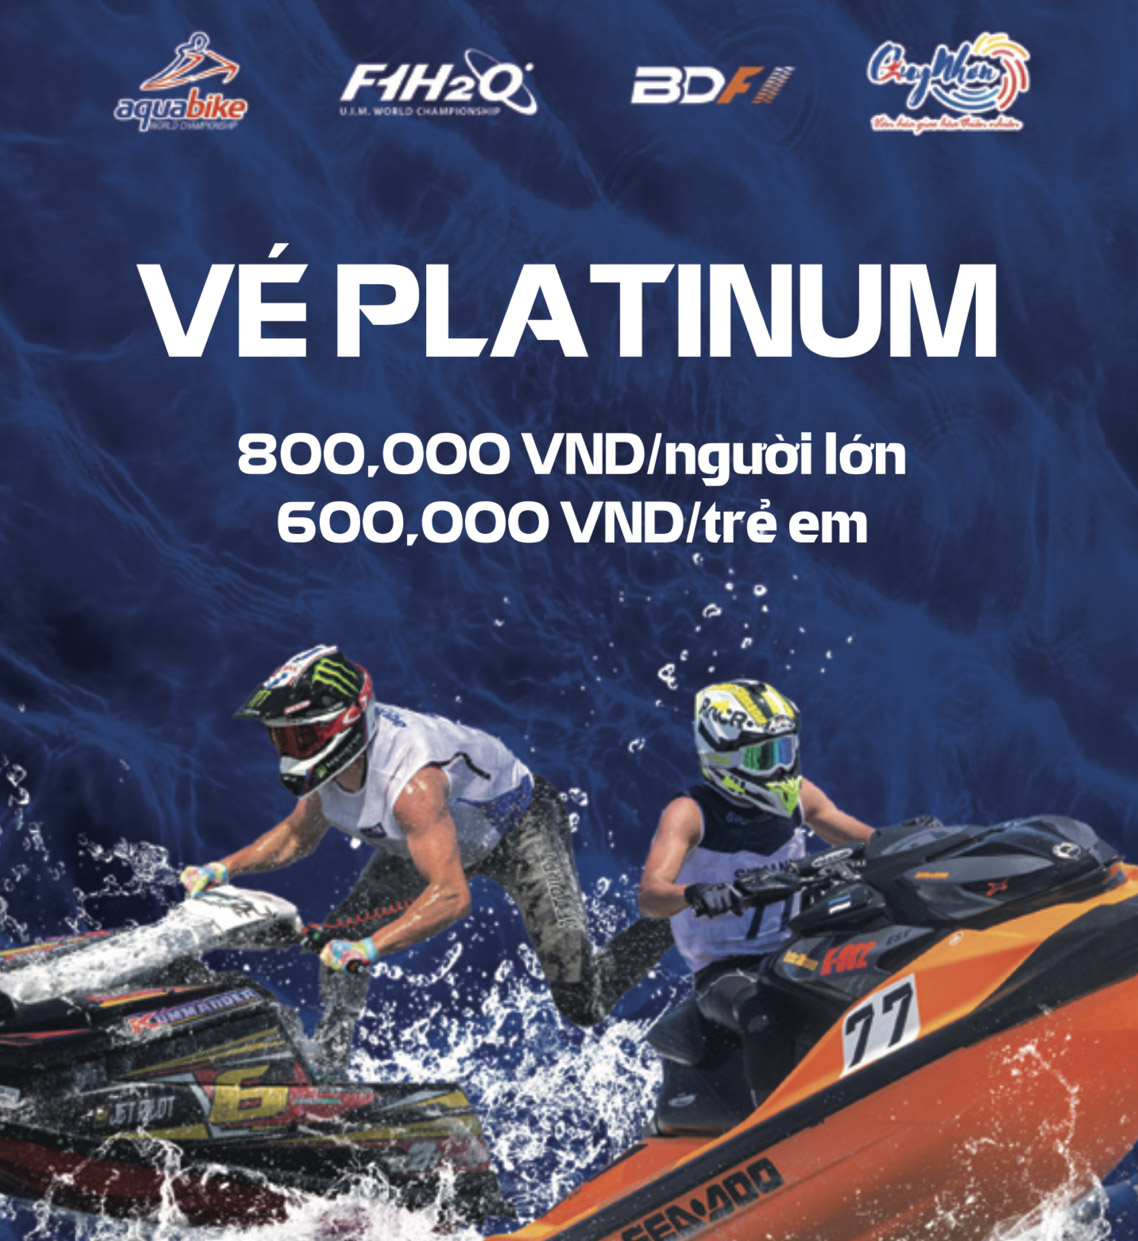 Giá vé Platinum giải đua thuyền máy F1 - Bình Định Grand Prix